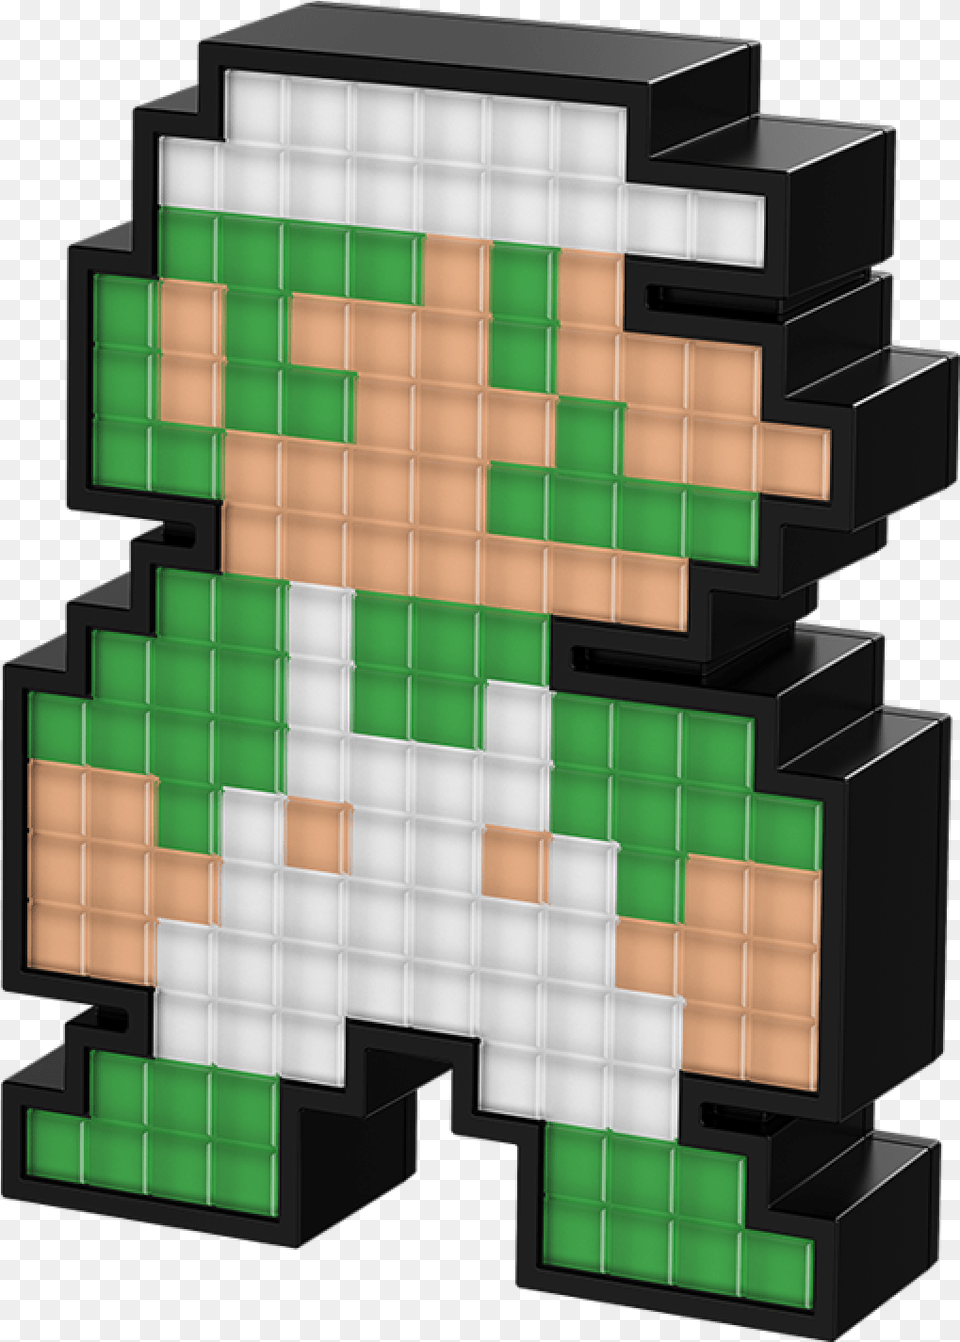 Bit Luigi Pixel Pals 8 Bit Luigi, Toy Free Png Download